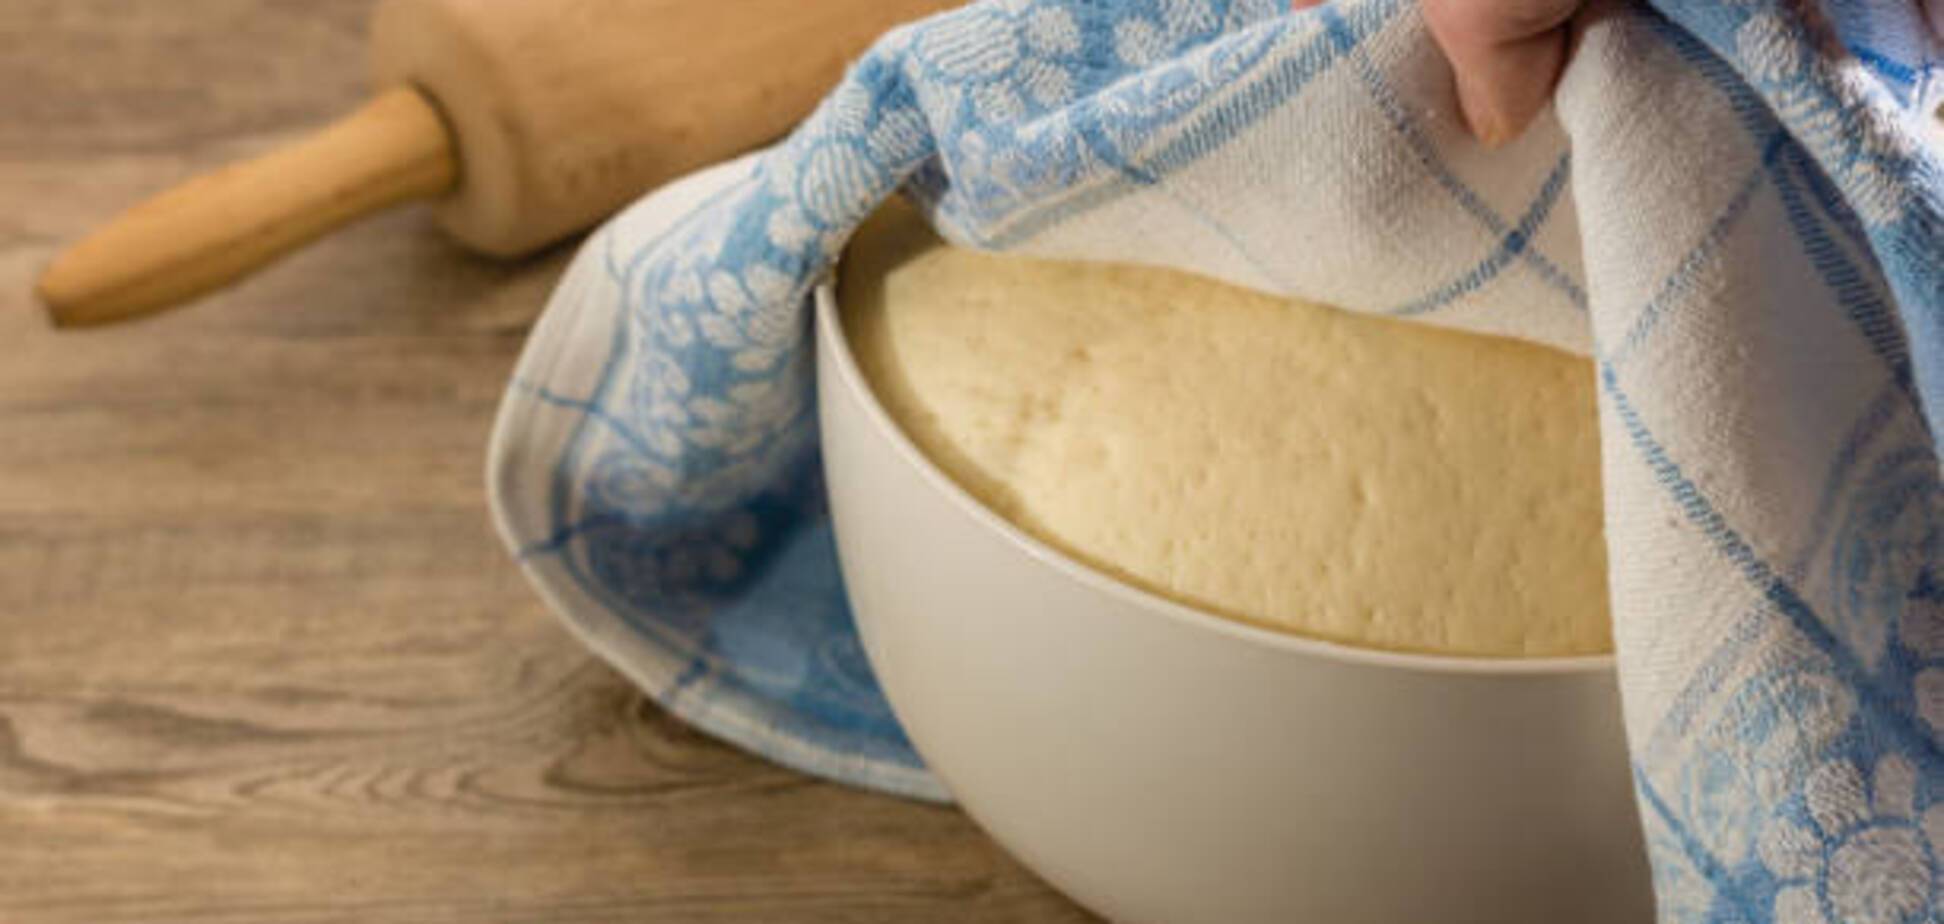 Як приготувати заварне тісто для вареників та пельменів, яке не розварюється: рецепт